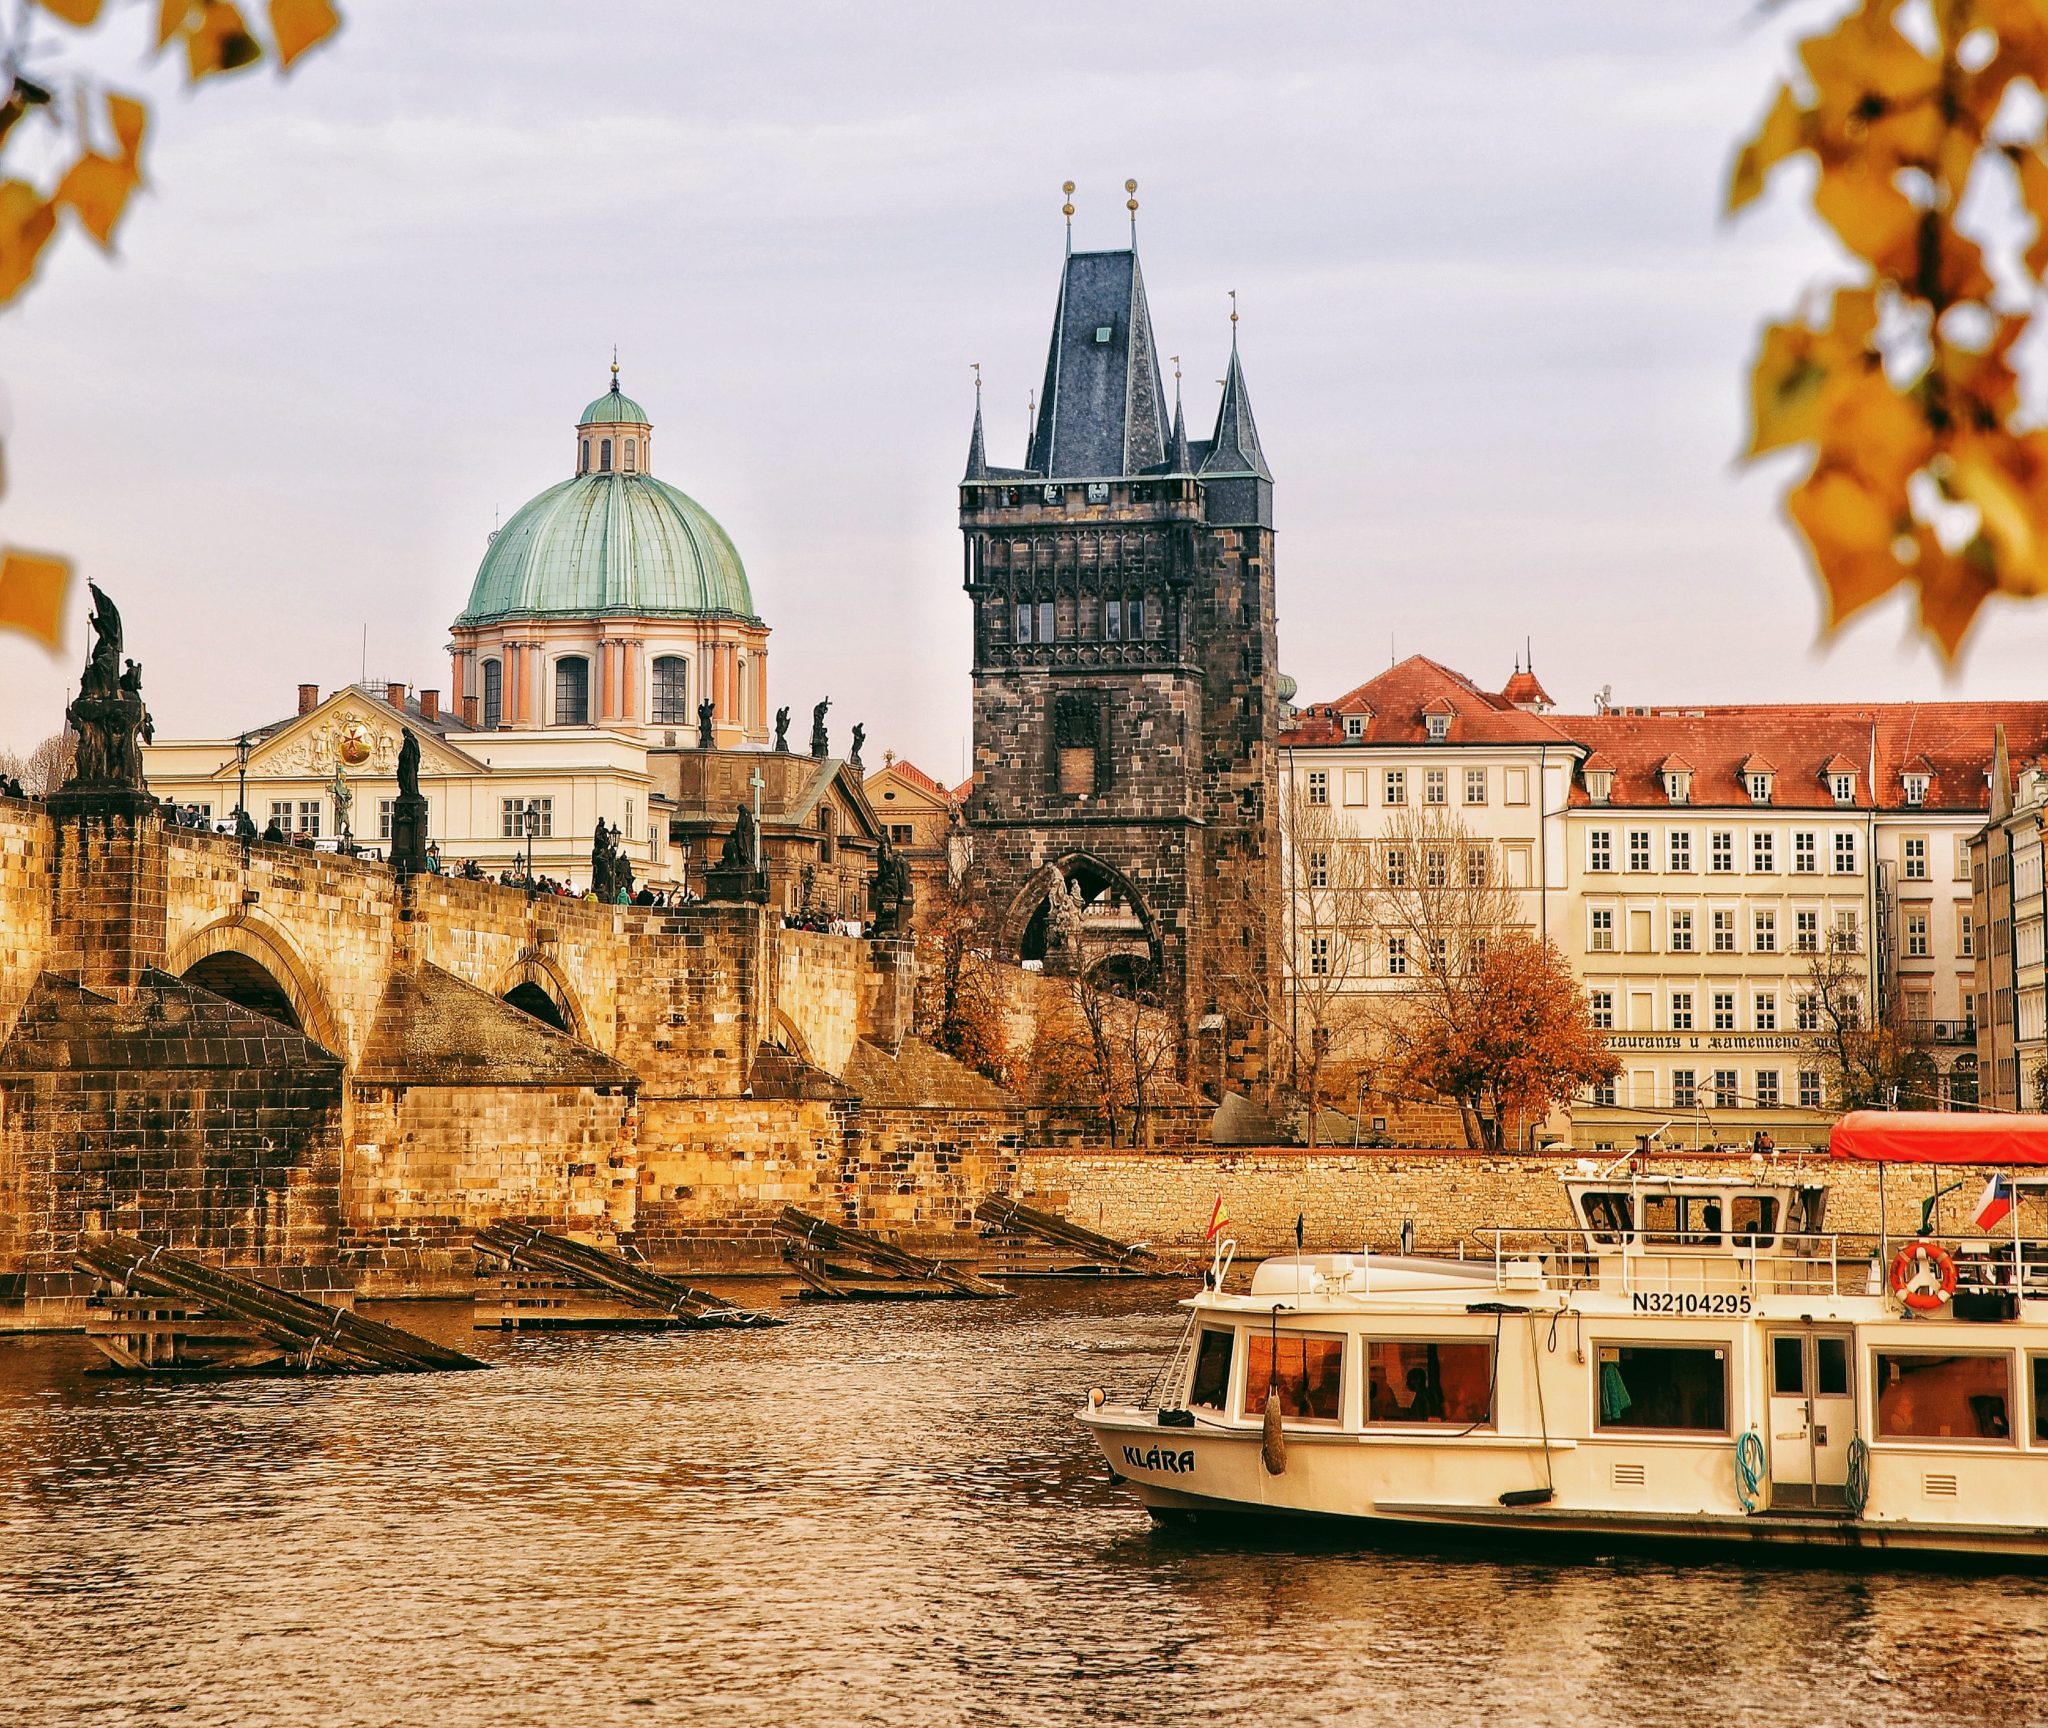 Prag – The city of beer